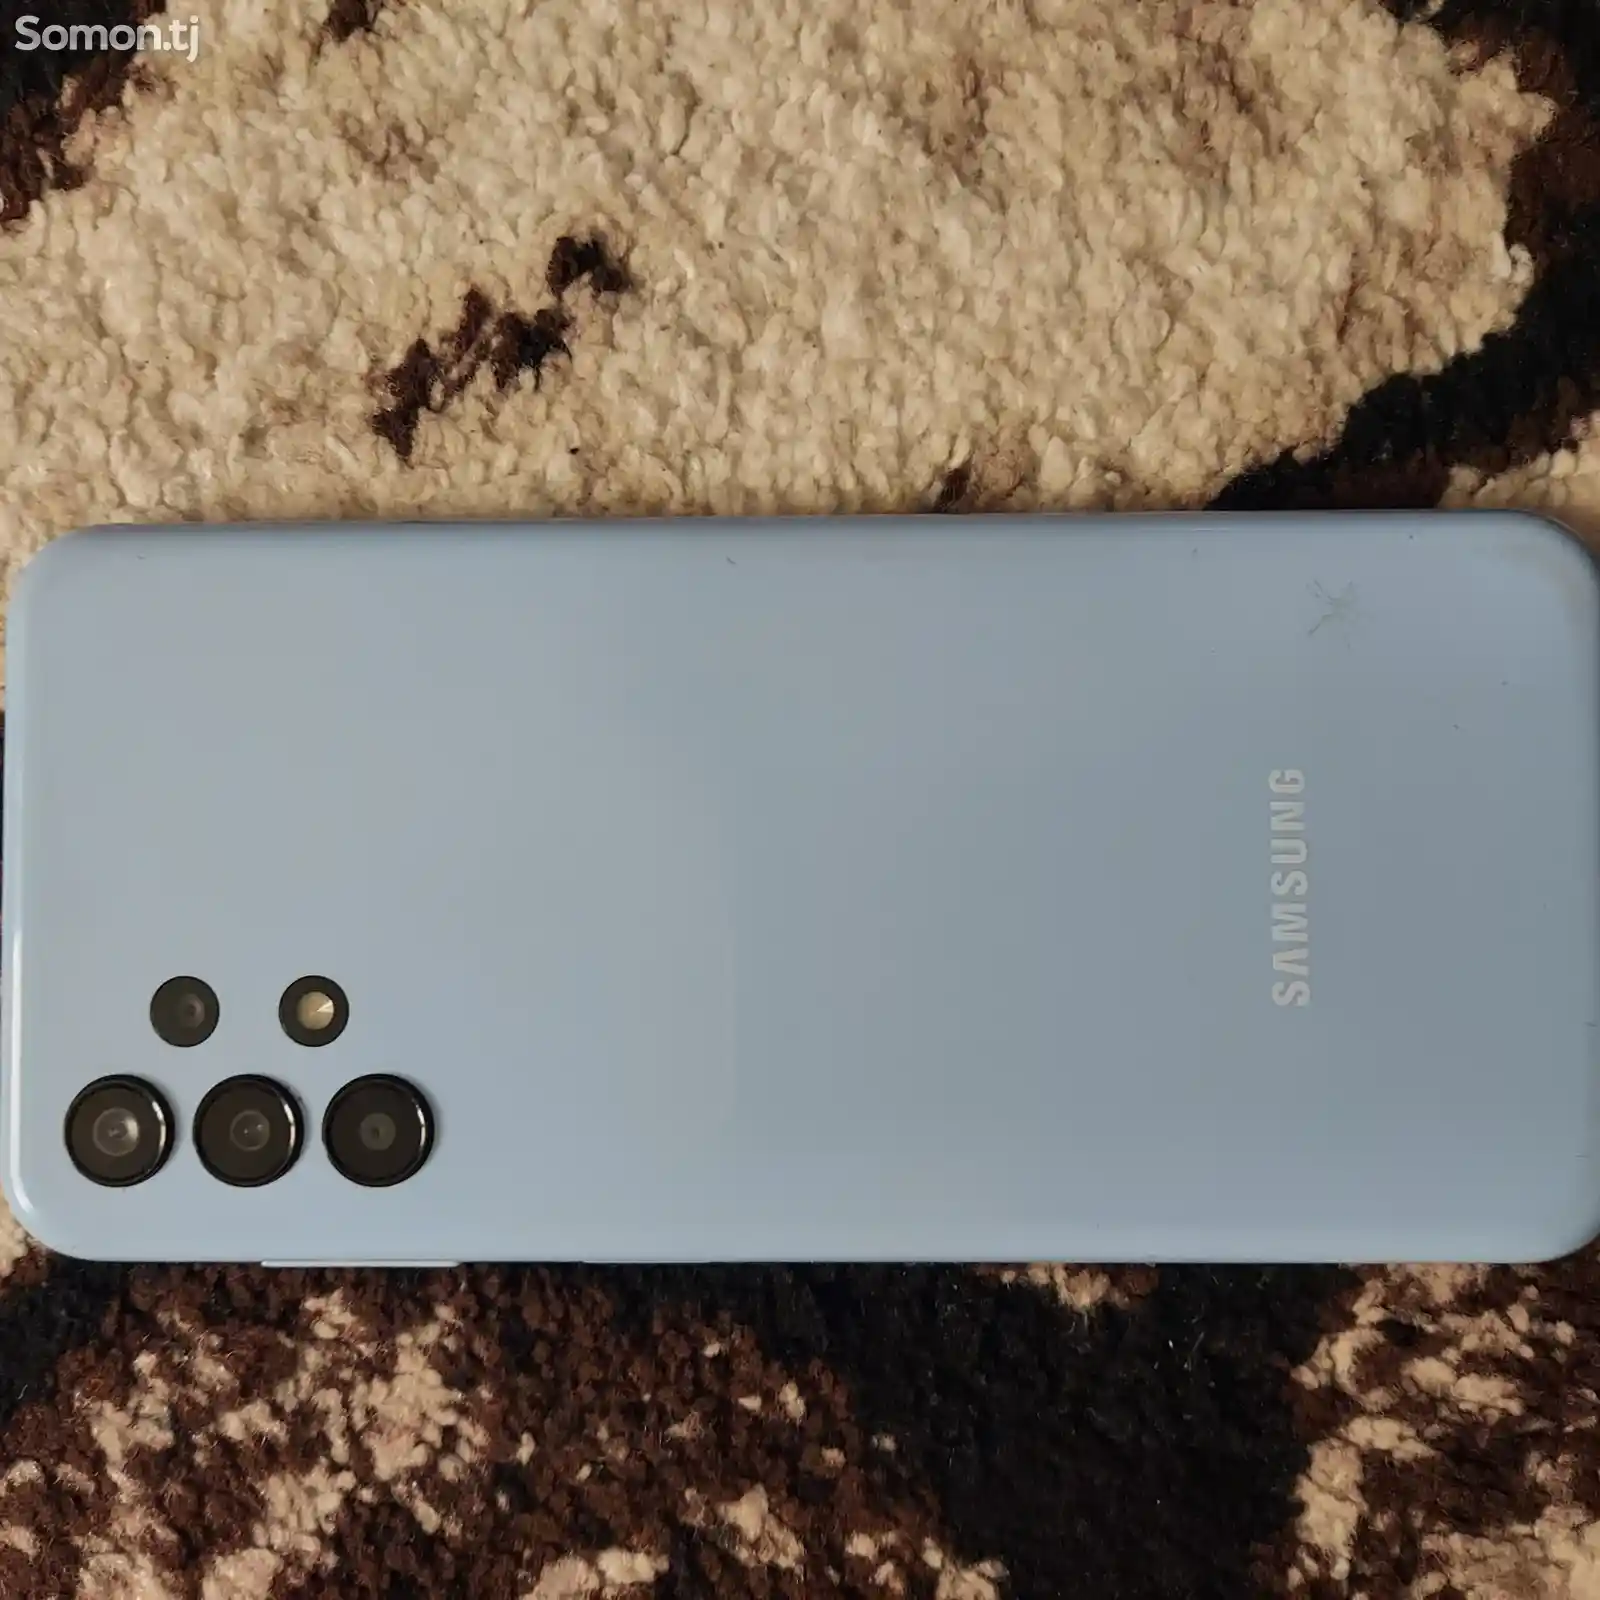 Samsung Galaxy A13-2